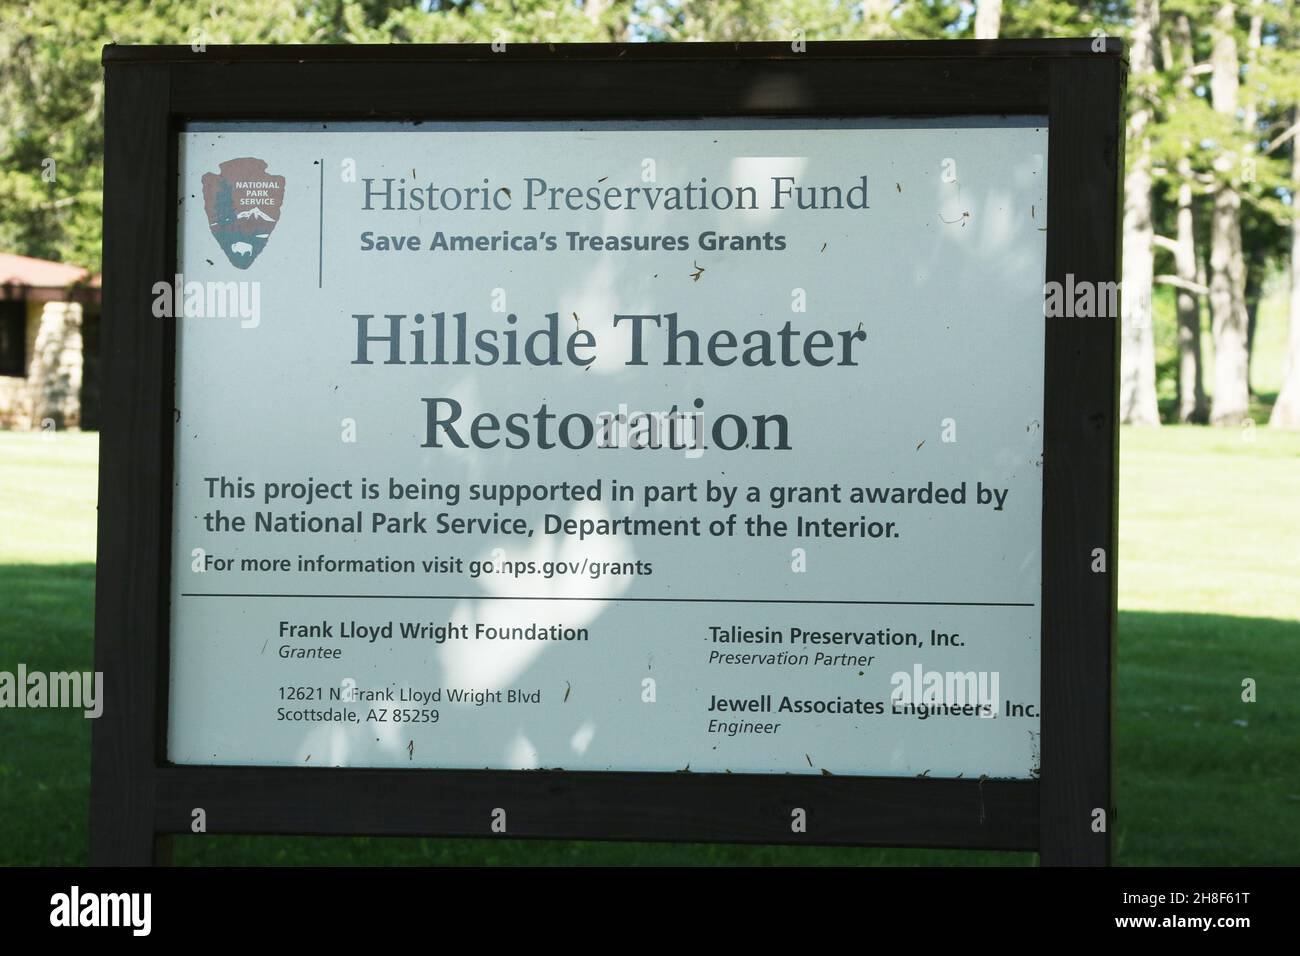 Panneau indiquant la restauration du théâtre Hillside appuyé par le Fonds de préservation historique du Service national des parcs.Hillside Home School.Architecture a Banque D'Images